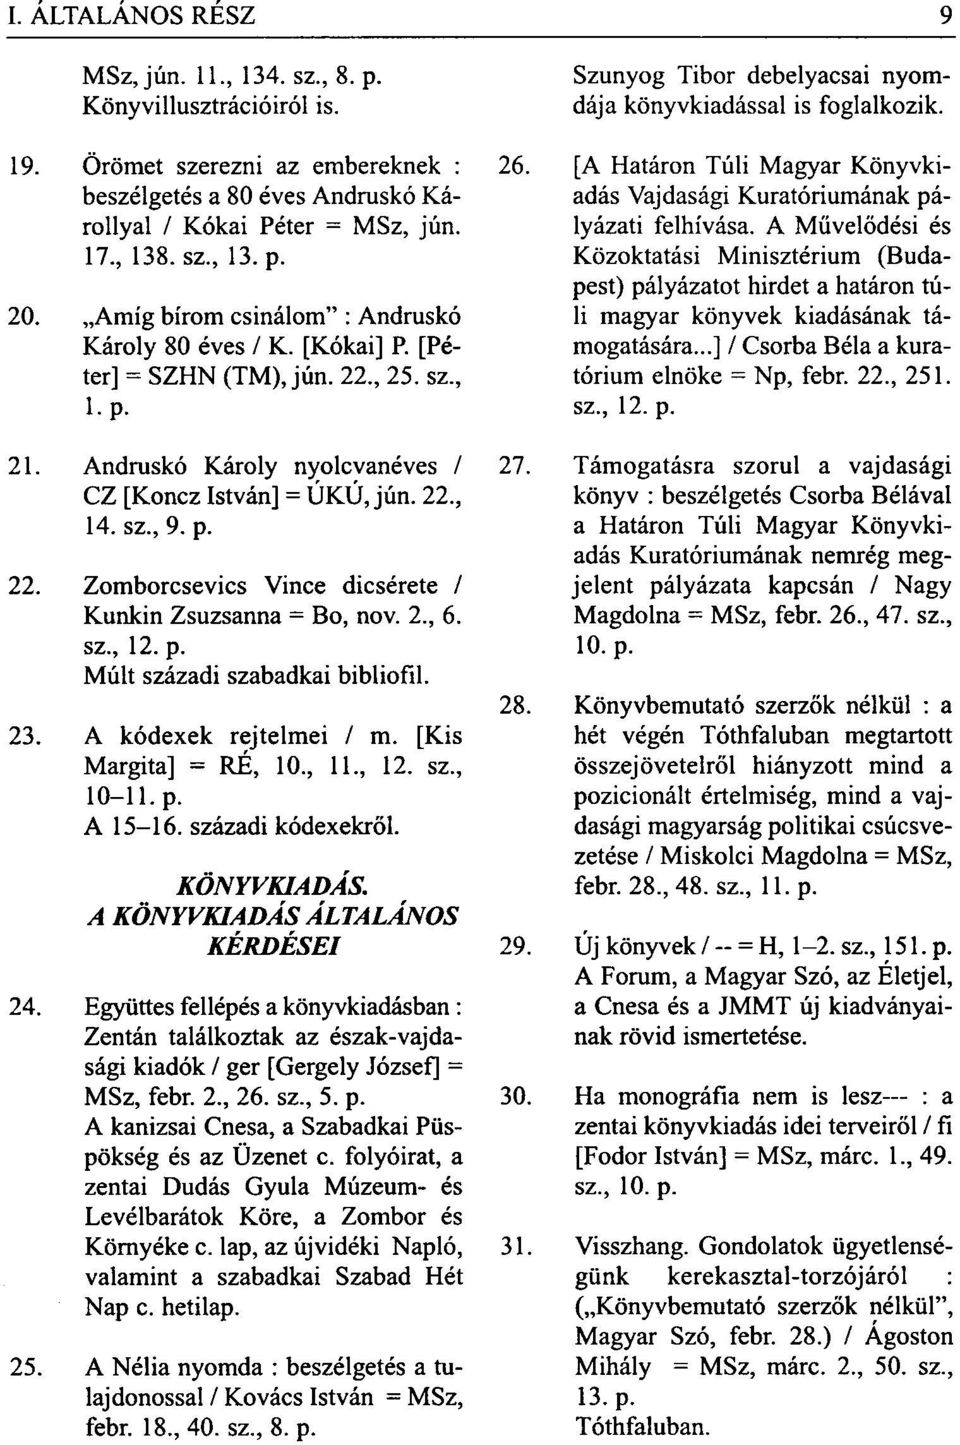 2., 6. sz., 12. p. Múlt századi szabadkai bibliofil. 23. A kódexek rejtelmei / m. [Kis Margita] = RÉ, 10., 11., 12. sz., 10-11. p. A 15-16. századi kódexekről. KÖNYVKIADÁS.